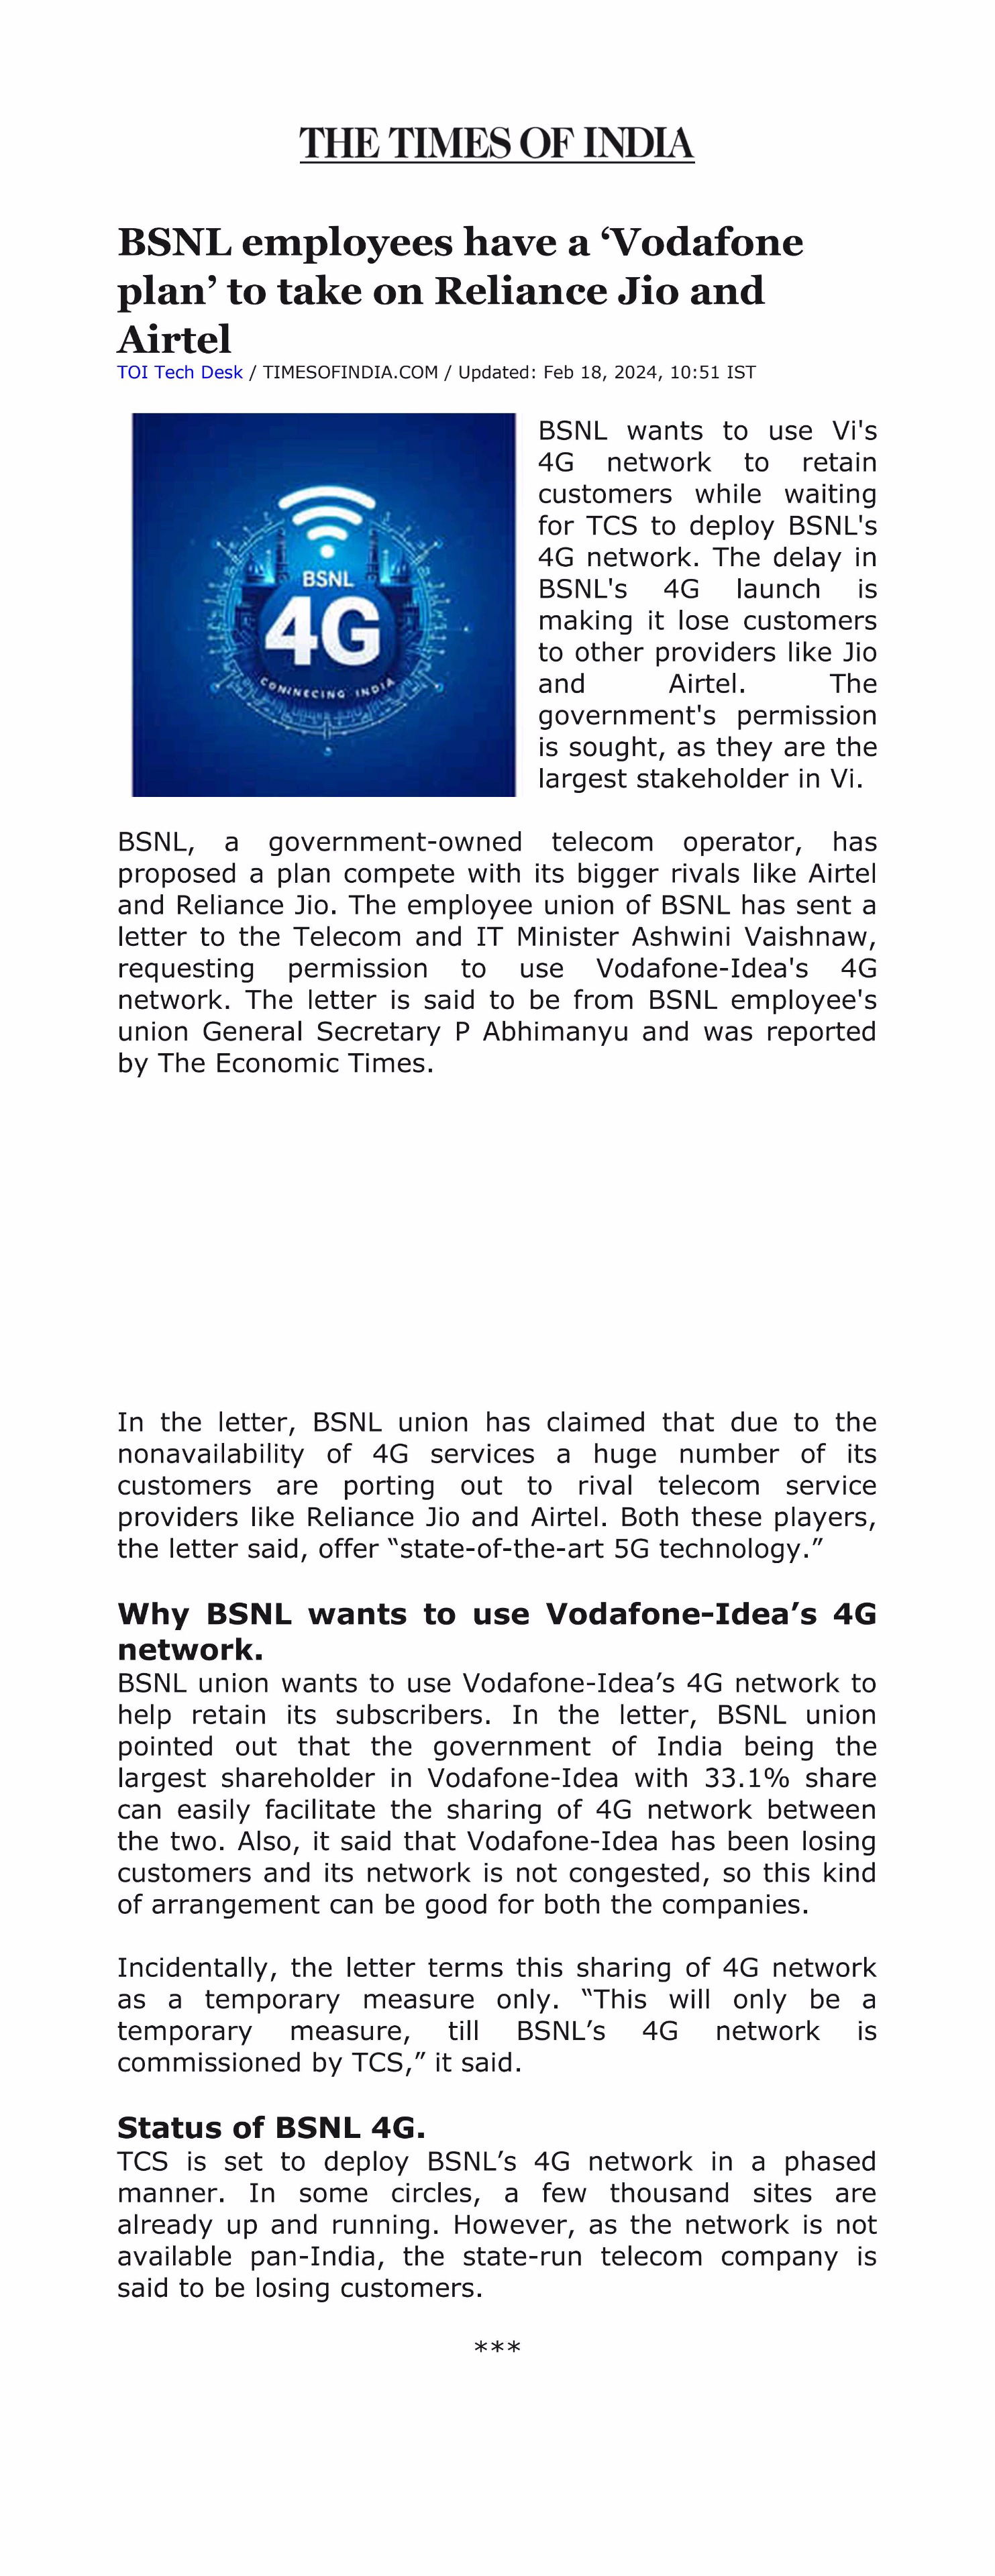 *टाइम्स ऑफ इंडिया, भारतातील प्रमुख वृत्तपत्राने माननीय मंत्र्यांना लिहलेल्या BSNLEU च्या पत्राला कवरेज दिले आहे.* Image 